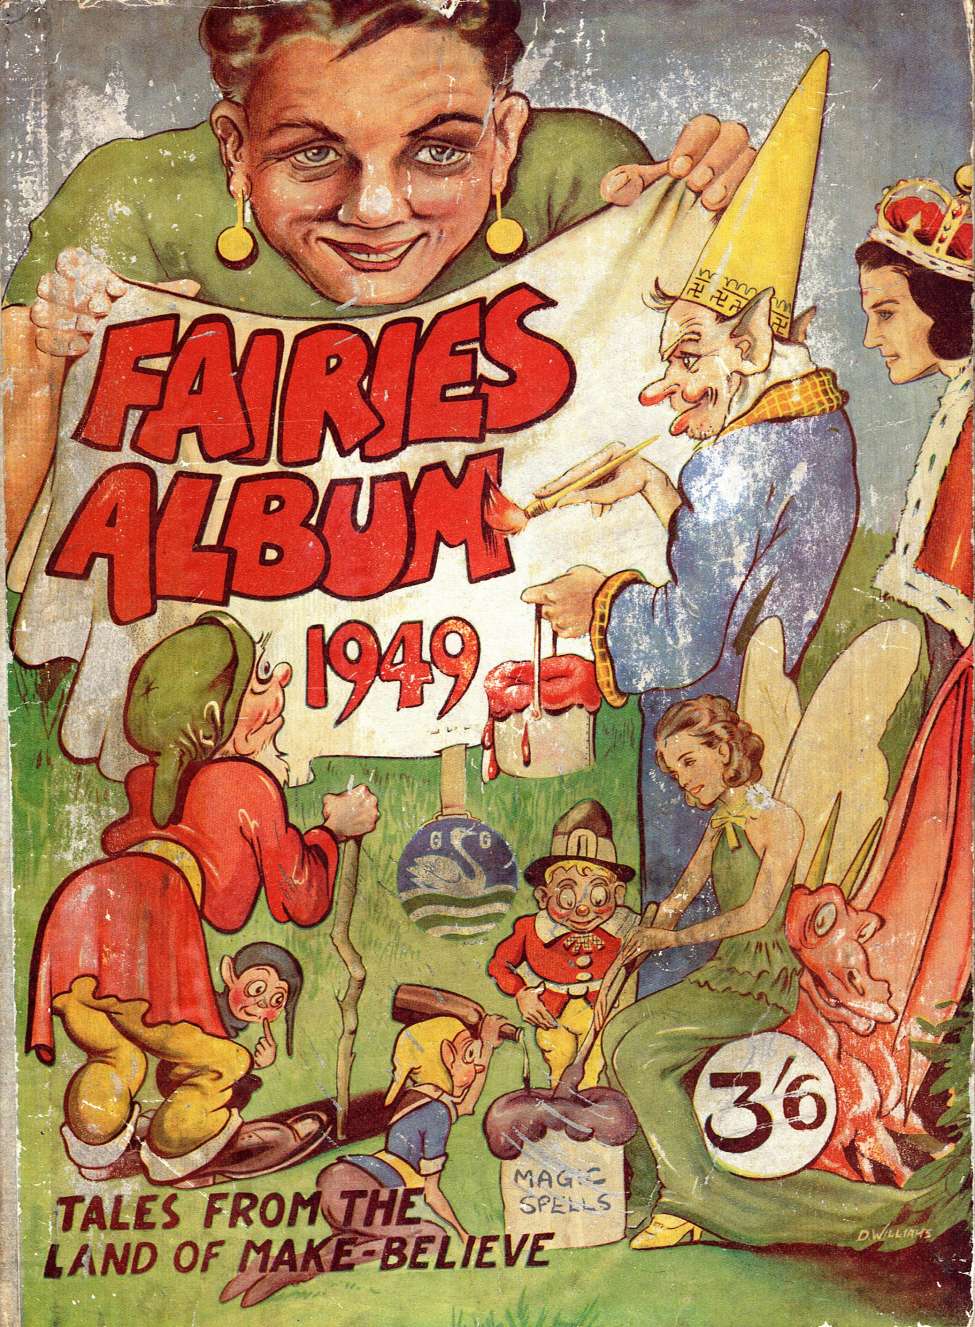 Comic Book Cover For Fairies Album 1949